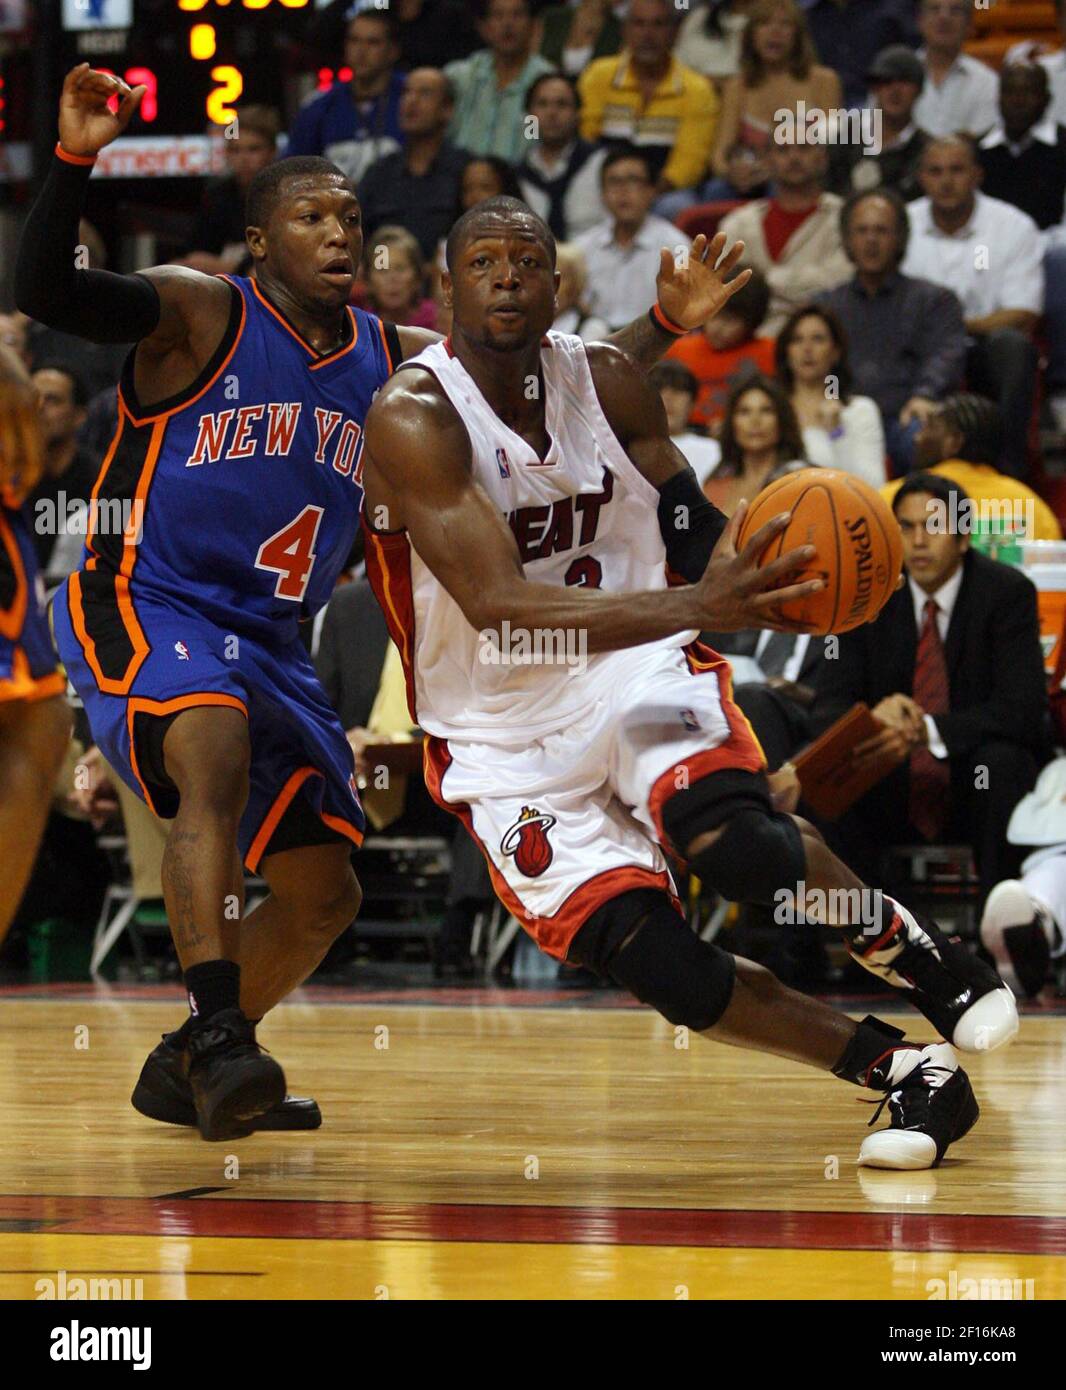 Dwyane Wade, de Miami Heat, acude al aro por la defensa de Nate Robinson, de New York Knicks, durante el primer cuarto en el American Airlines Arena en Miami, Florida, viernes, 17 de noviembre de 2006. (Foto de Héctor Gabino/el Nuevo Herald/MCT/Sipa USA) Foto de stock